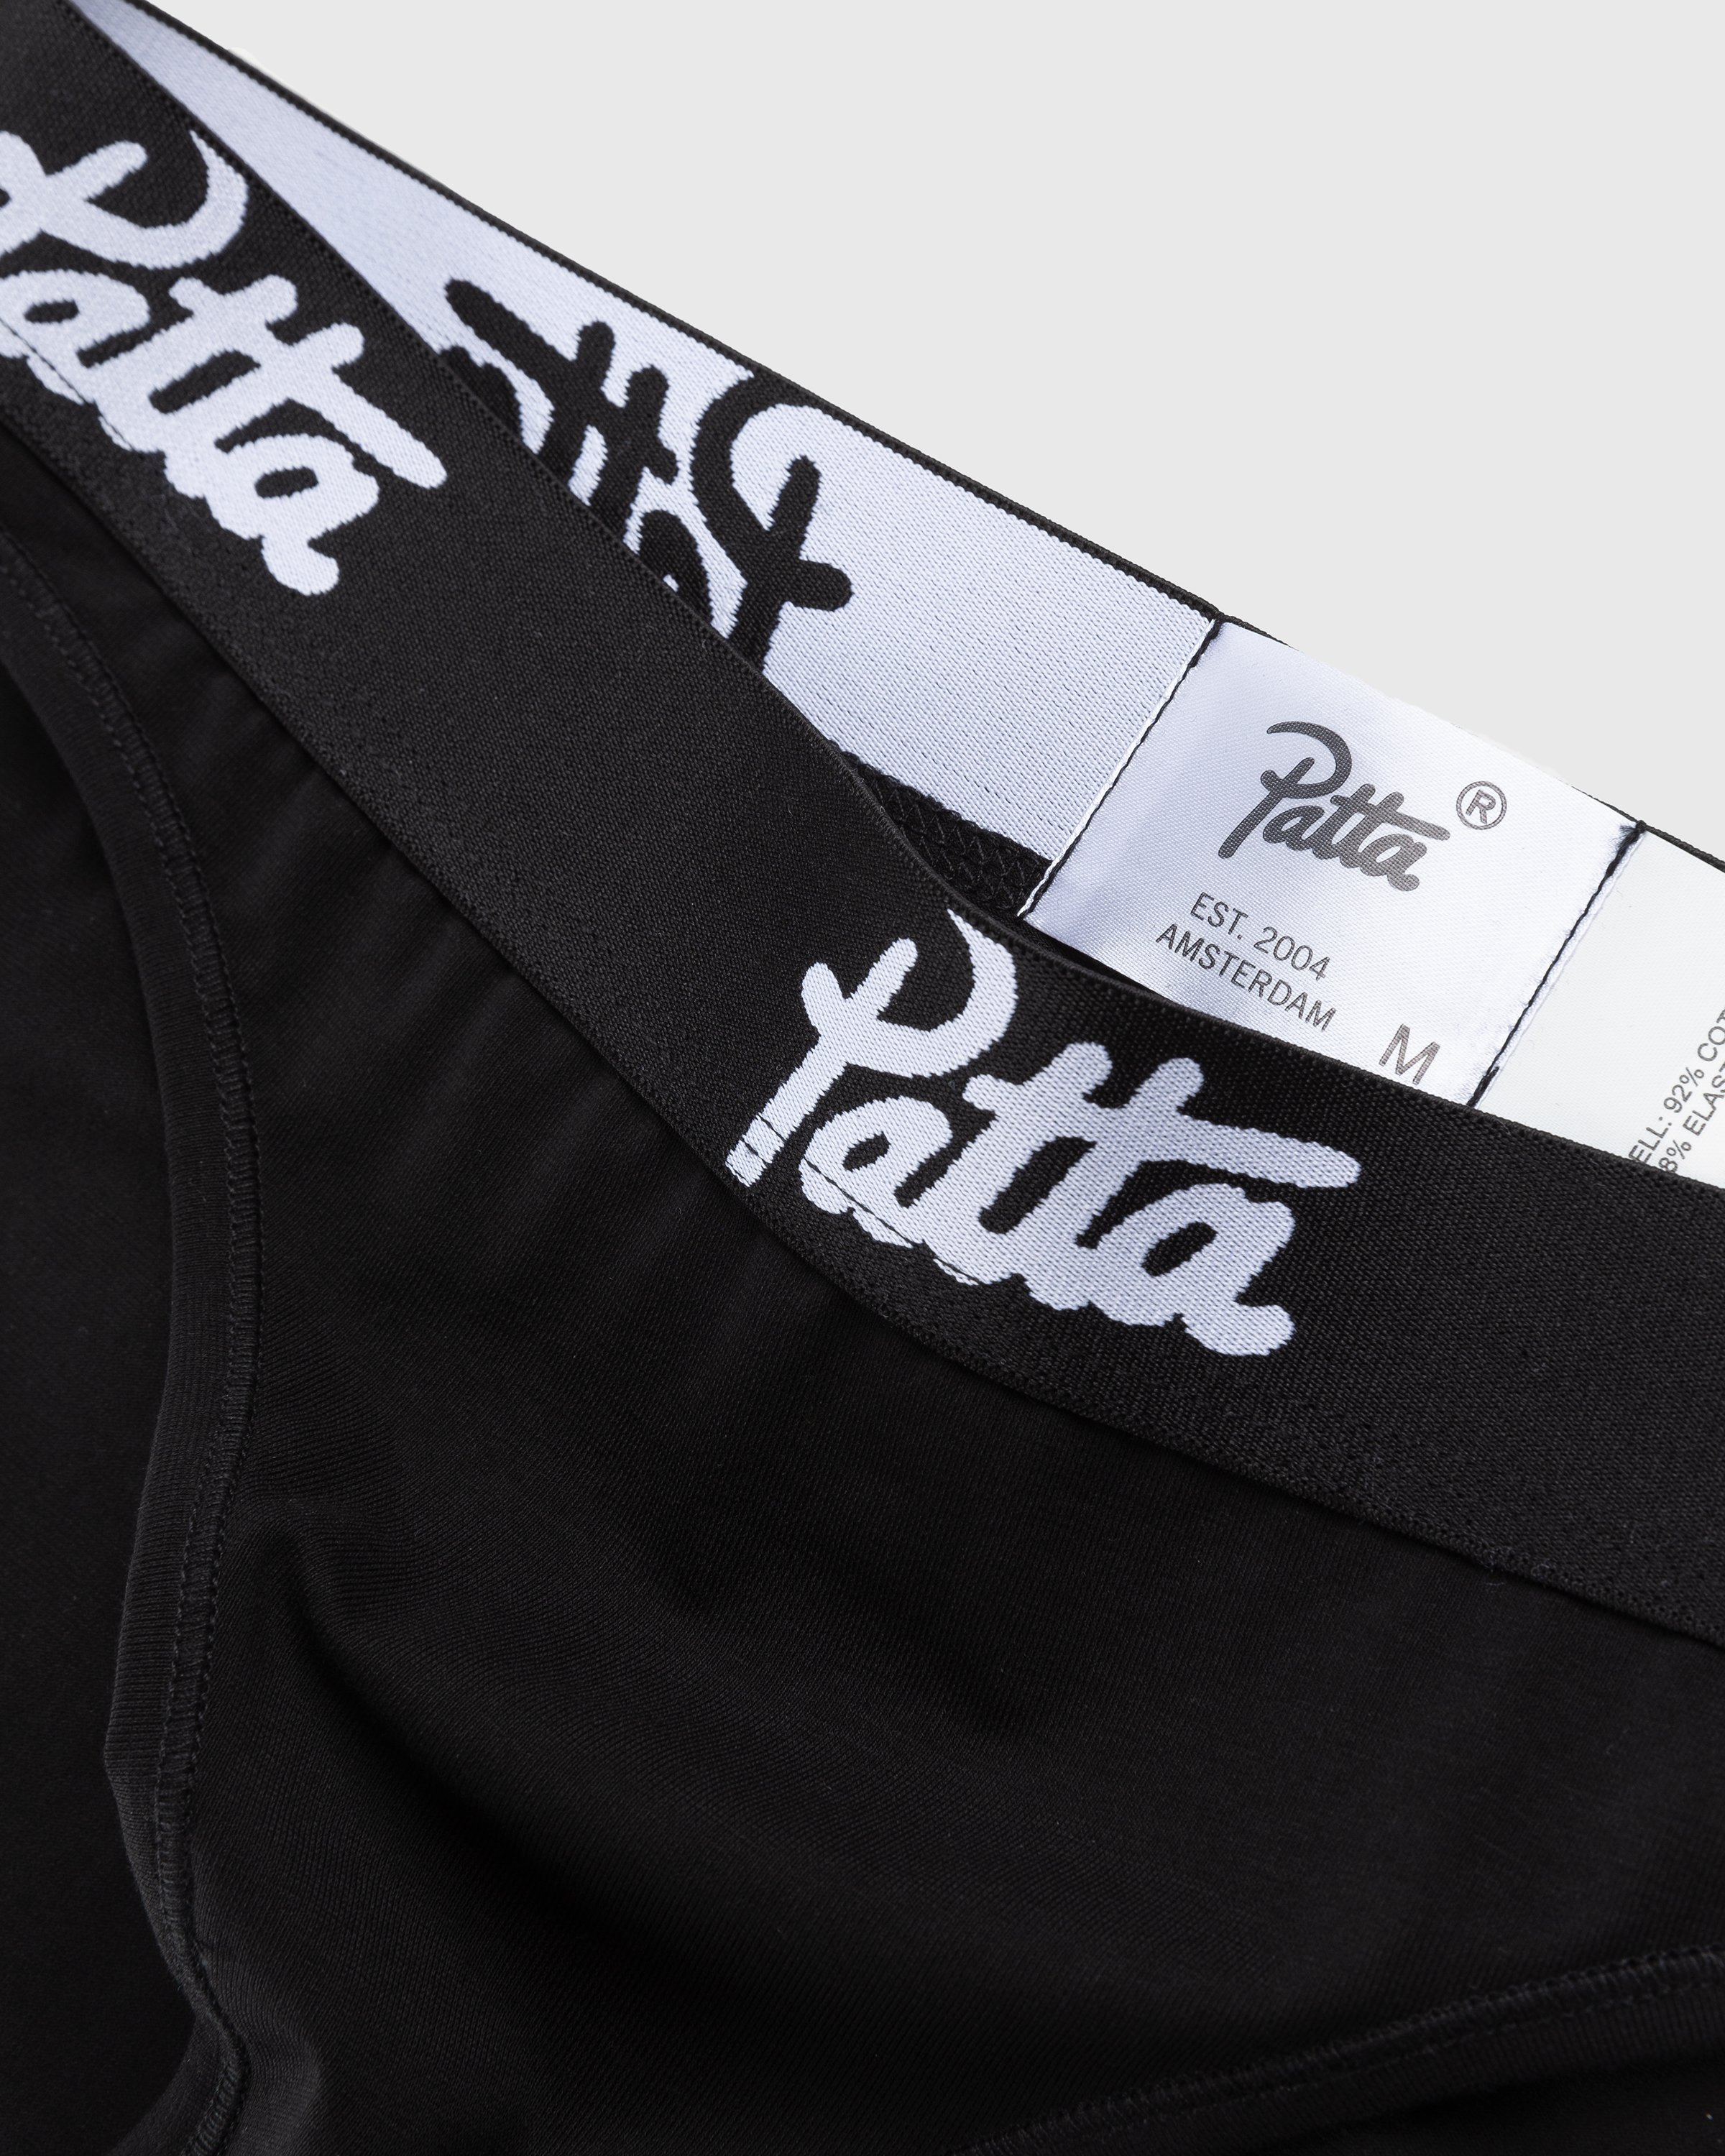 Patta - Women’s Underwear Brief Black - Clothing - Black - Image 4